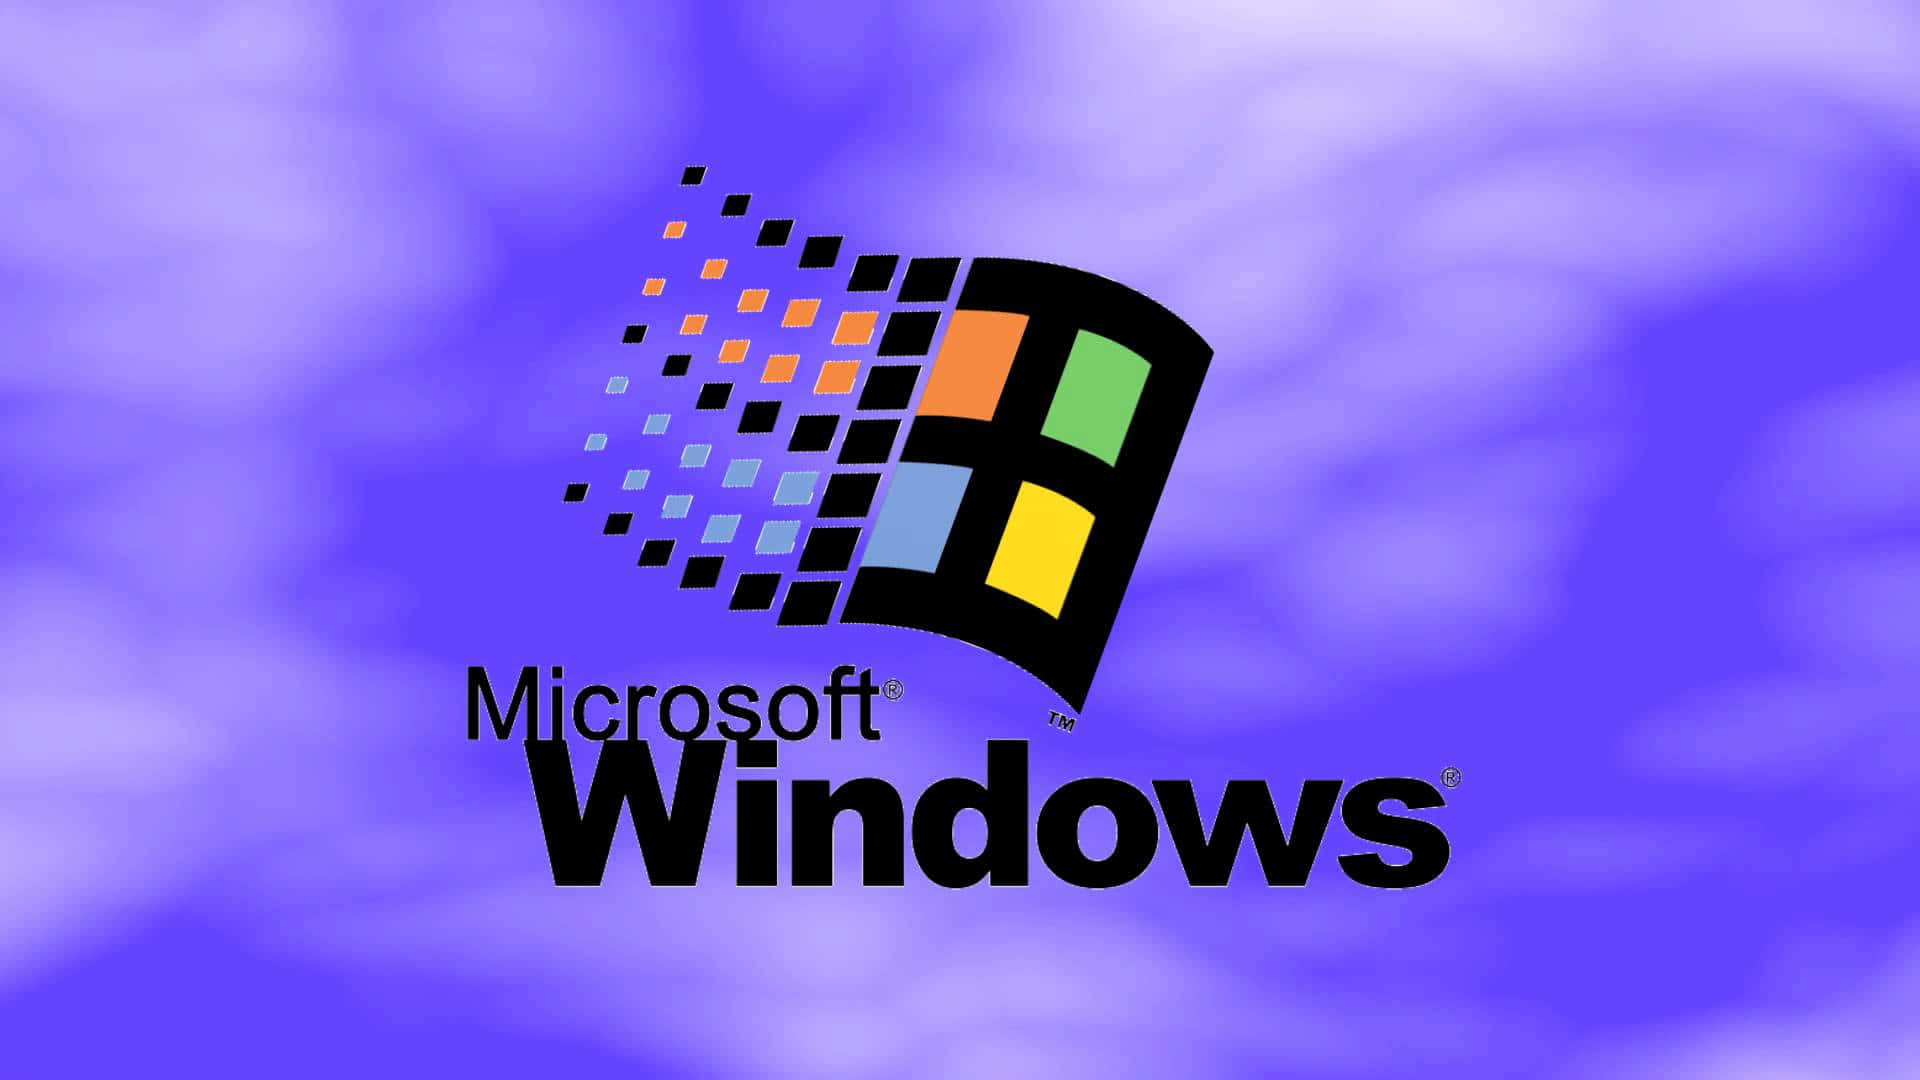 Vivila Potenza, L'efficienza E Il Divertimento Con Windows 95!